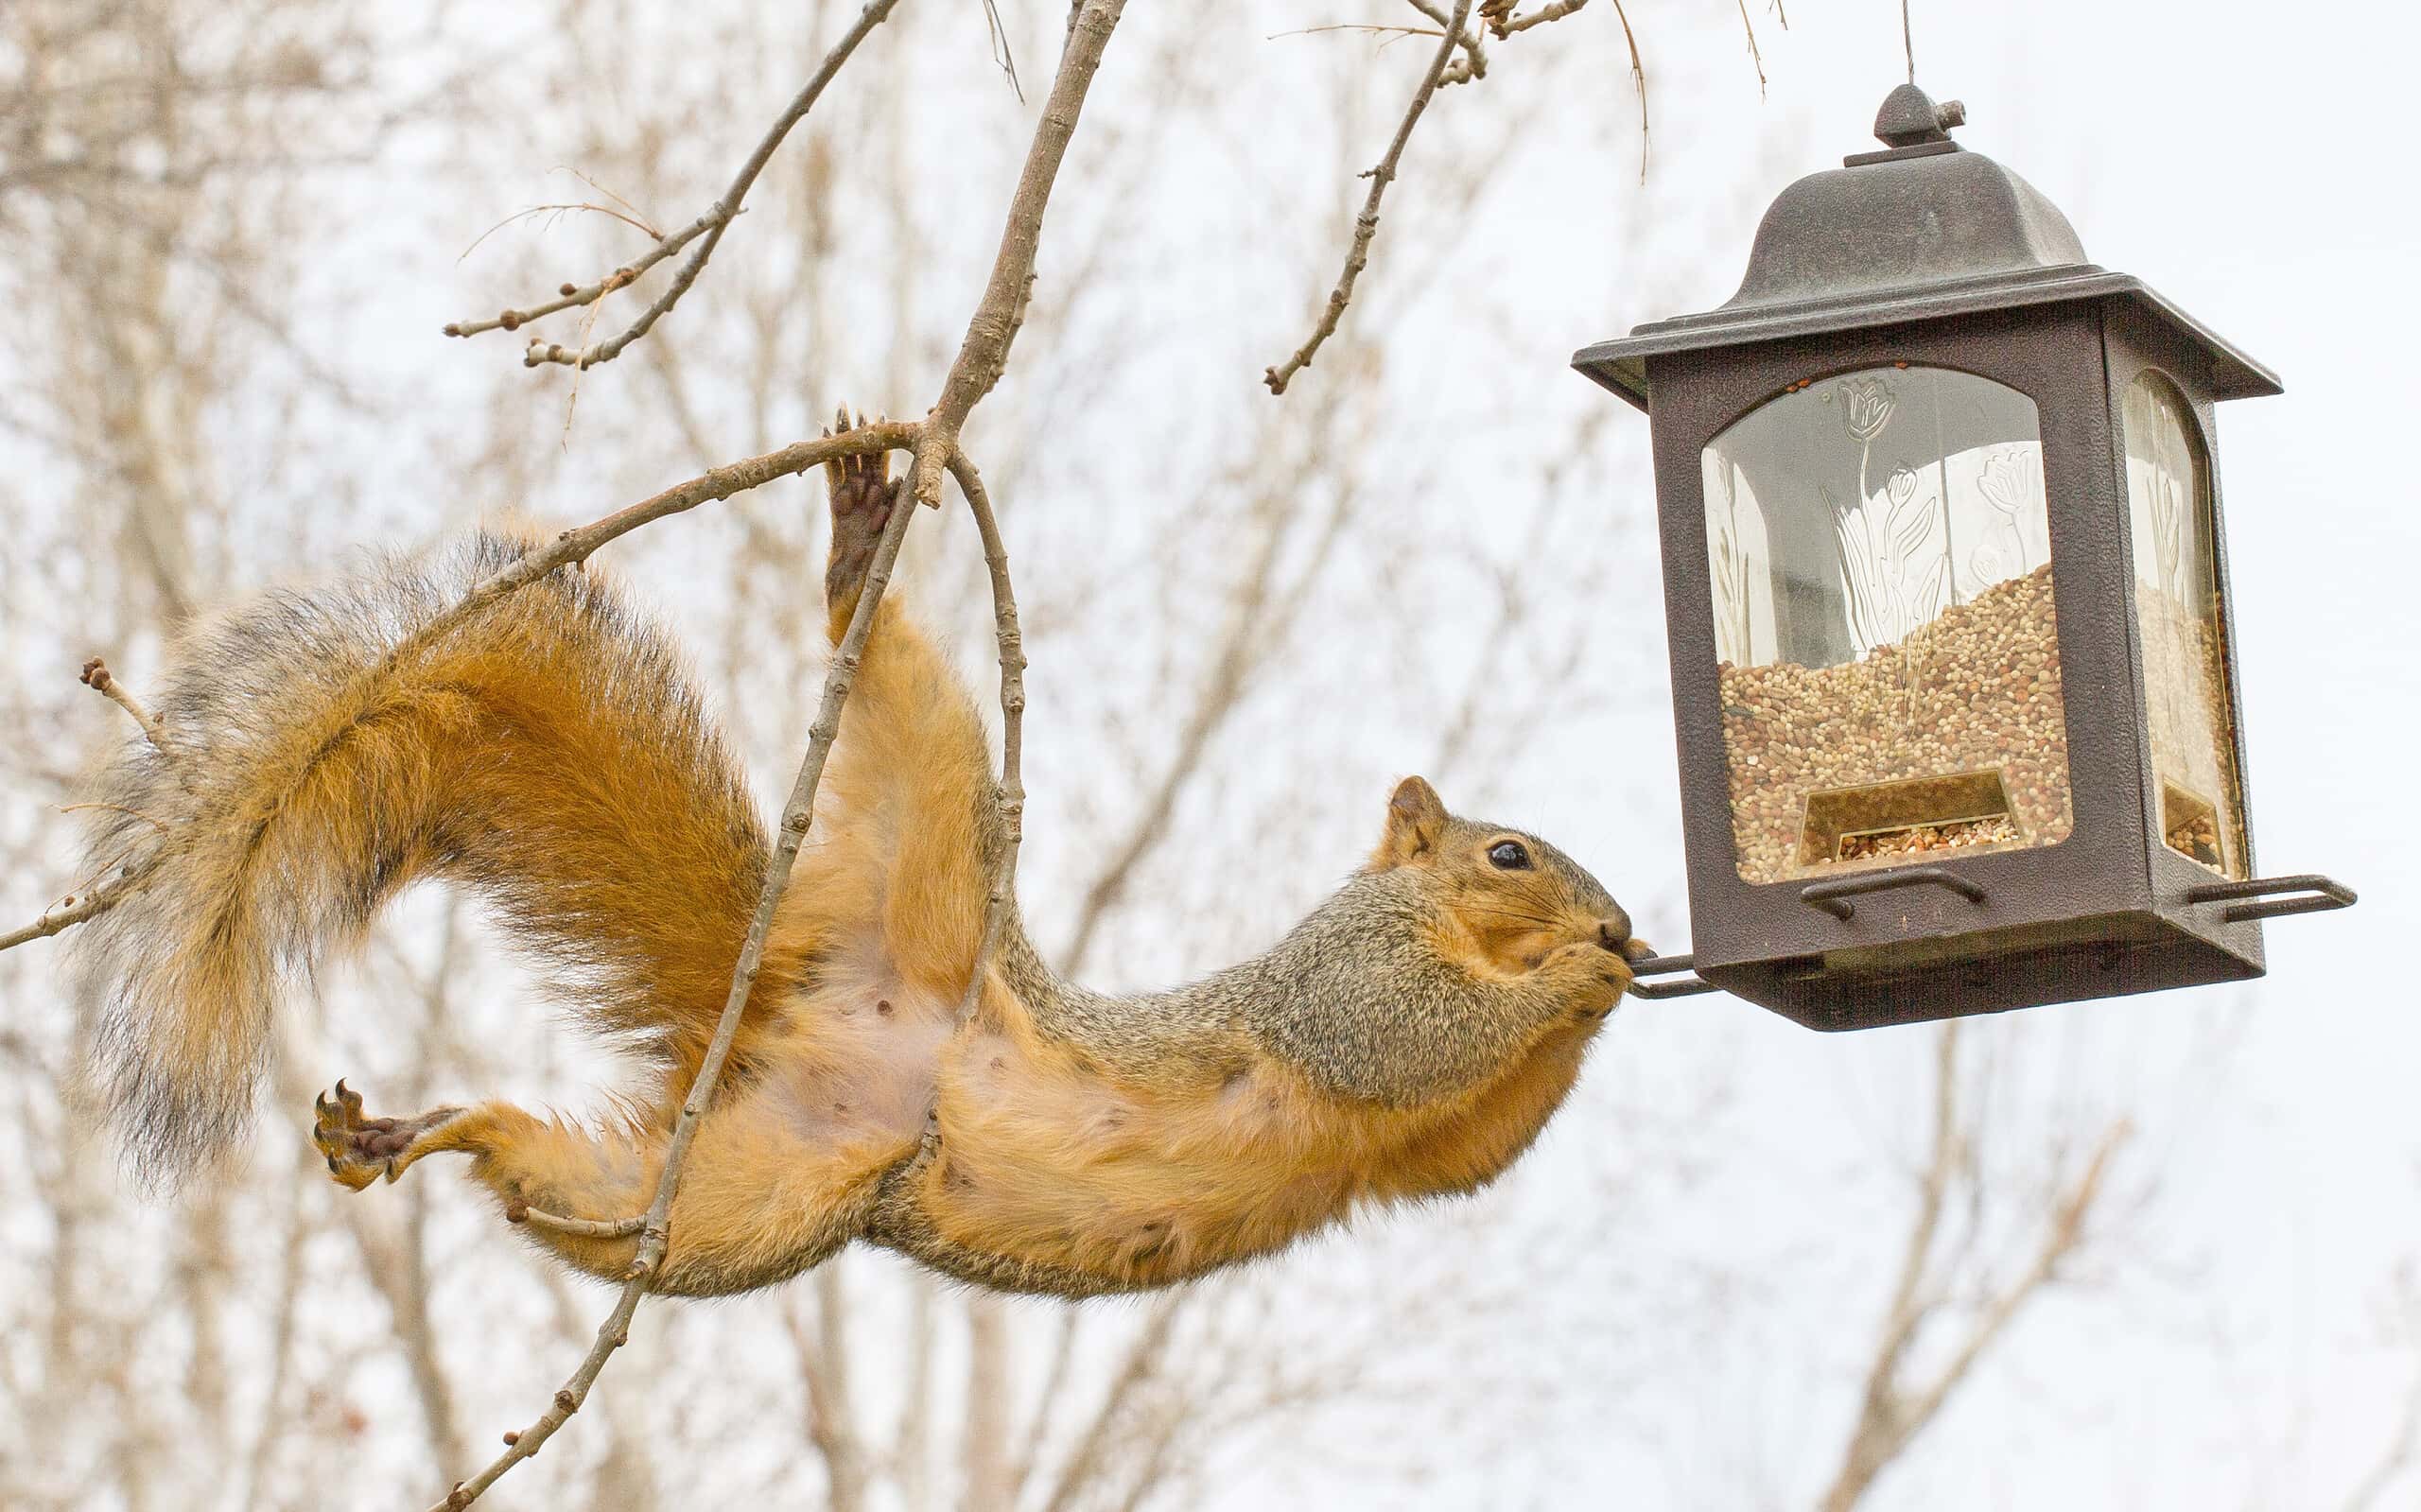 Squirrel with bird feeder